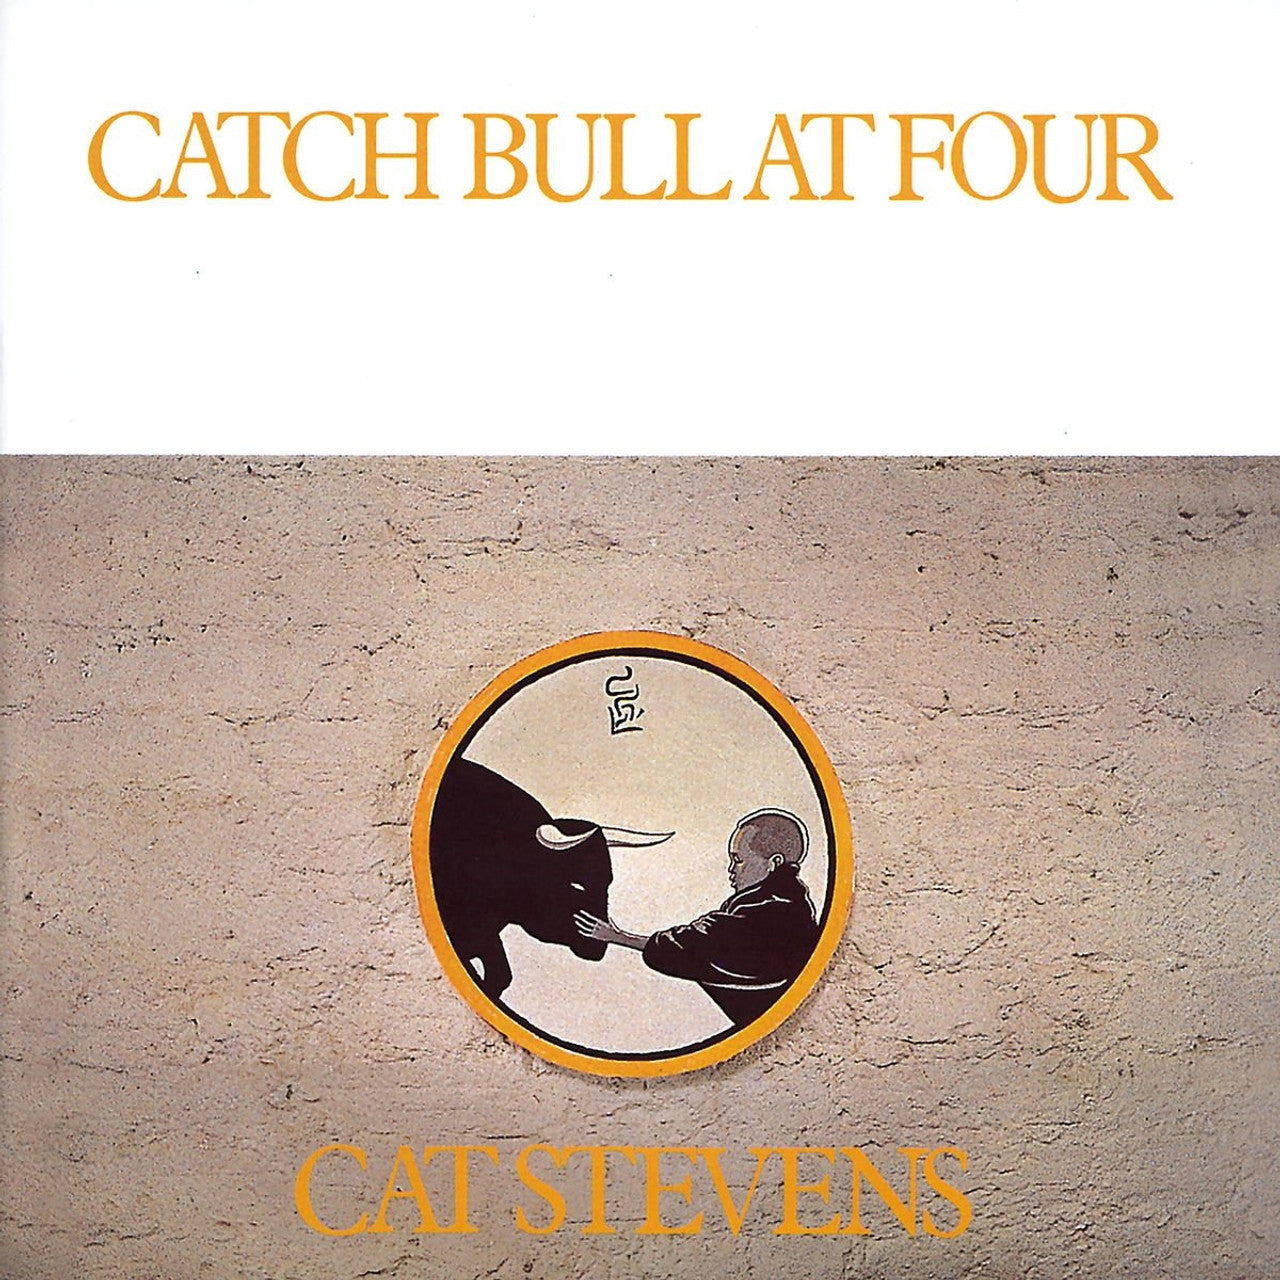 Buy Cat Stevens - Catch Bull at Four (180 Gram Vinyl)